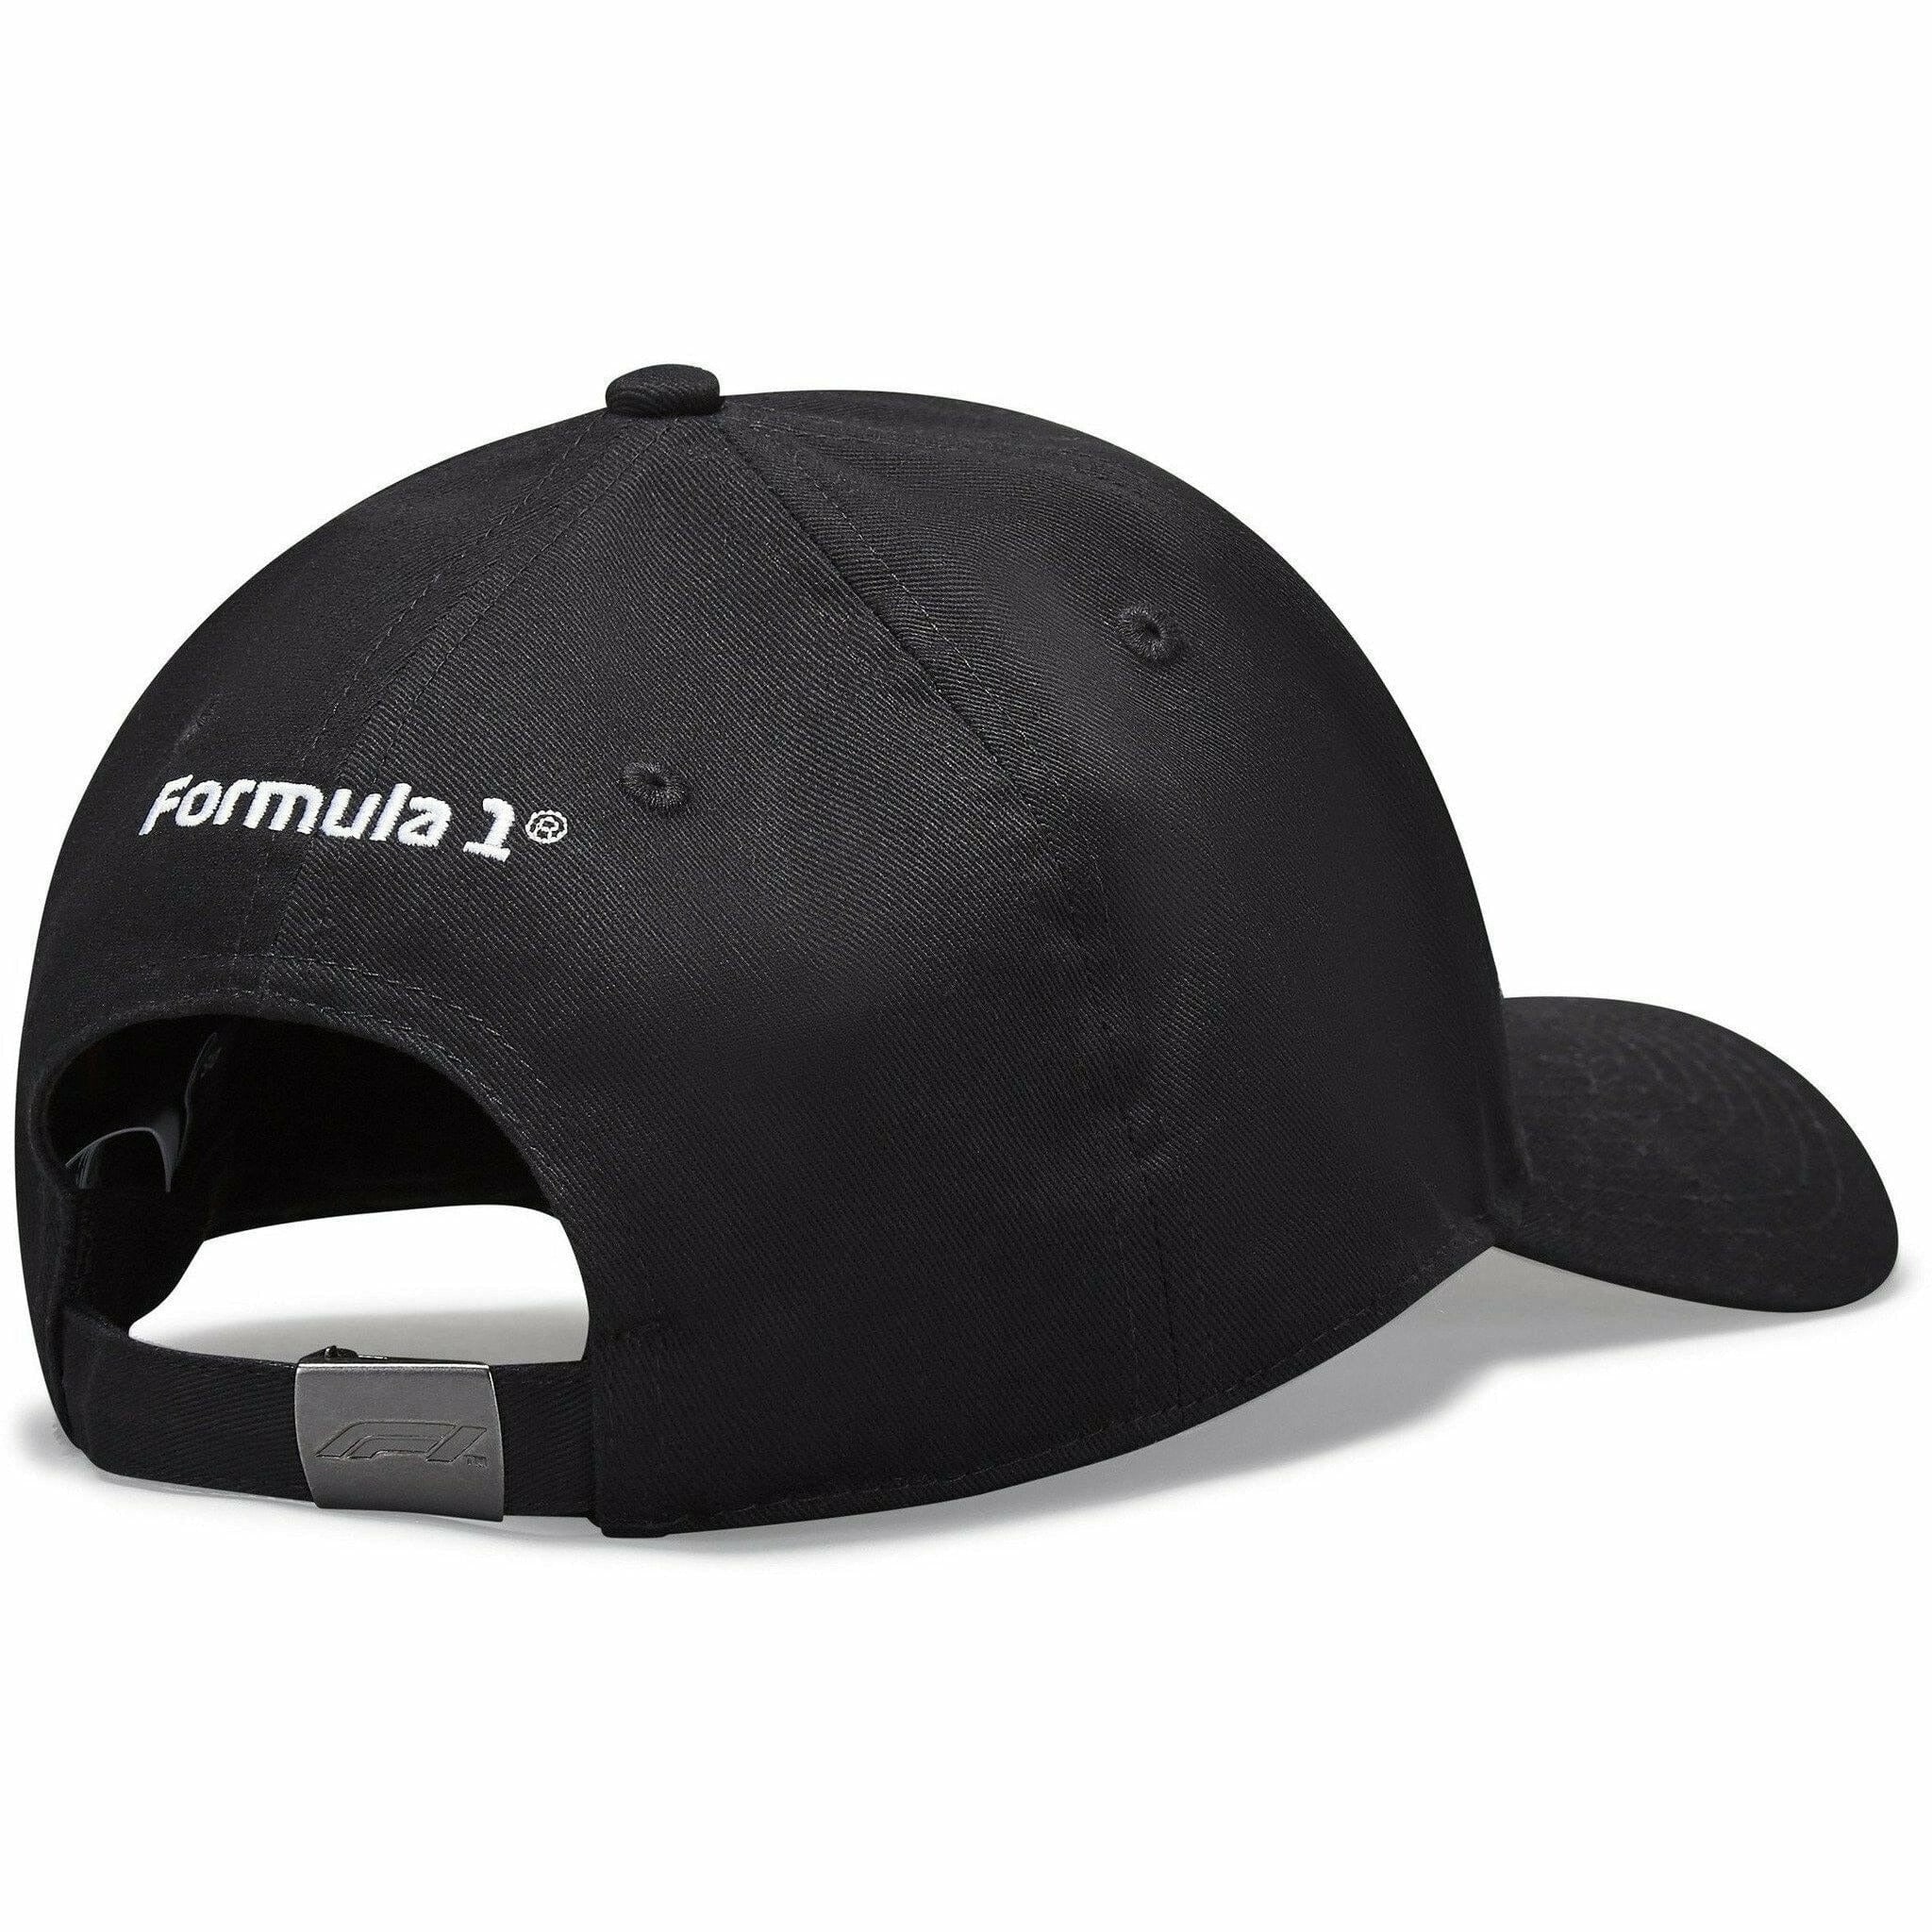 F1 Hats, Formula 1 Cap